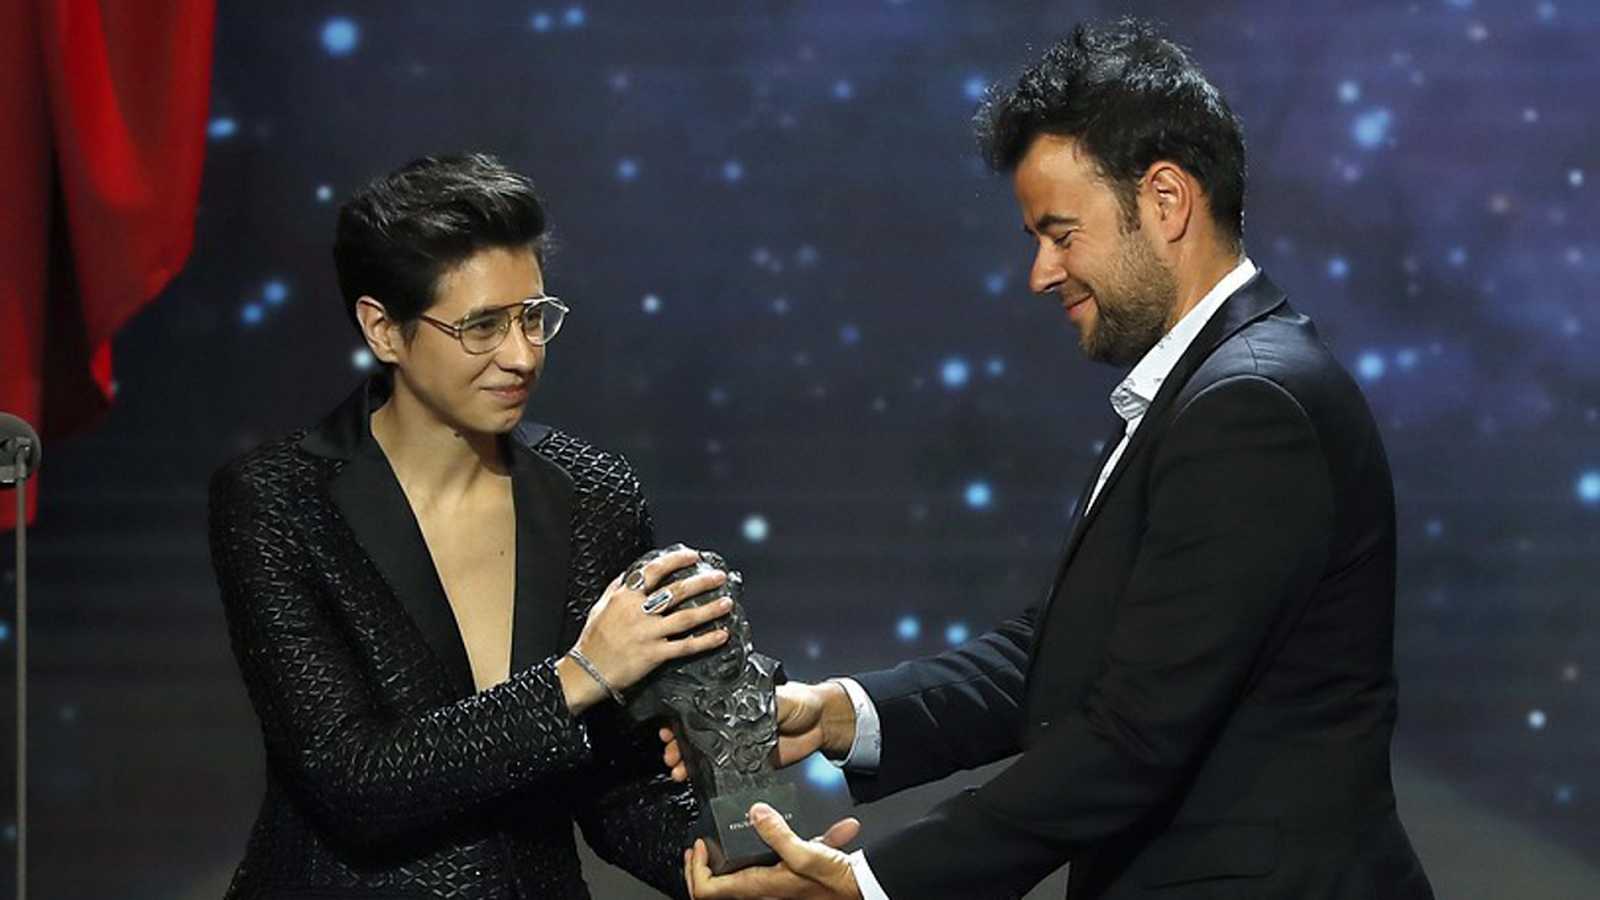 Los 6 momentos más LGTBI de los premios Goya 2019